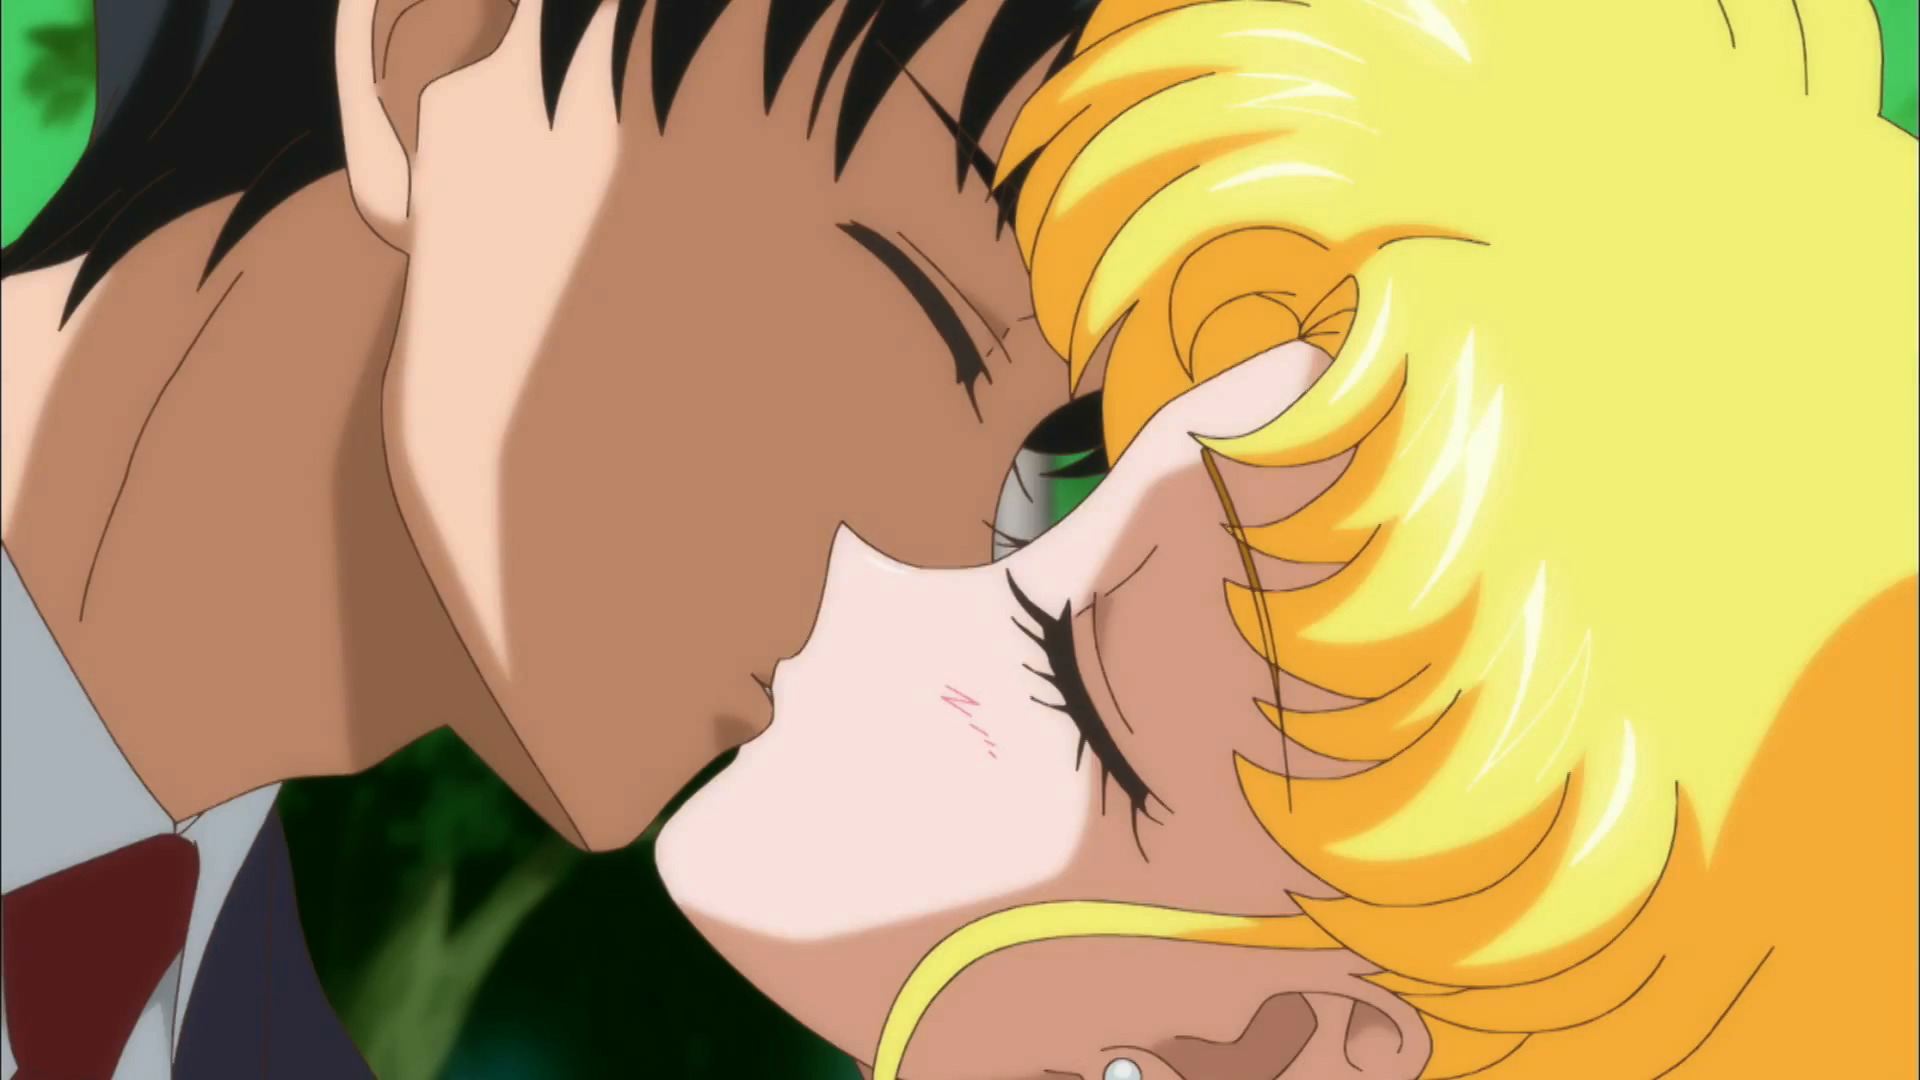 Sailor Moon Crystal season 2 trailer - Mamoru and Usagi kissing.